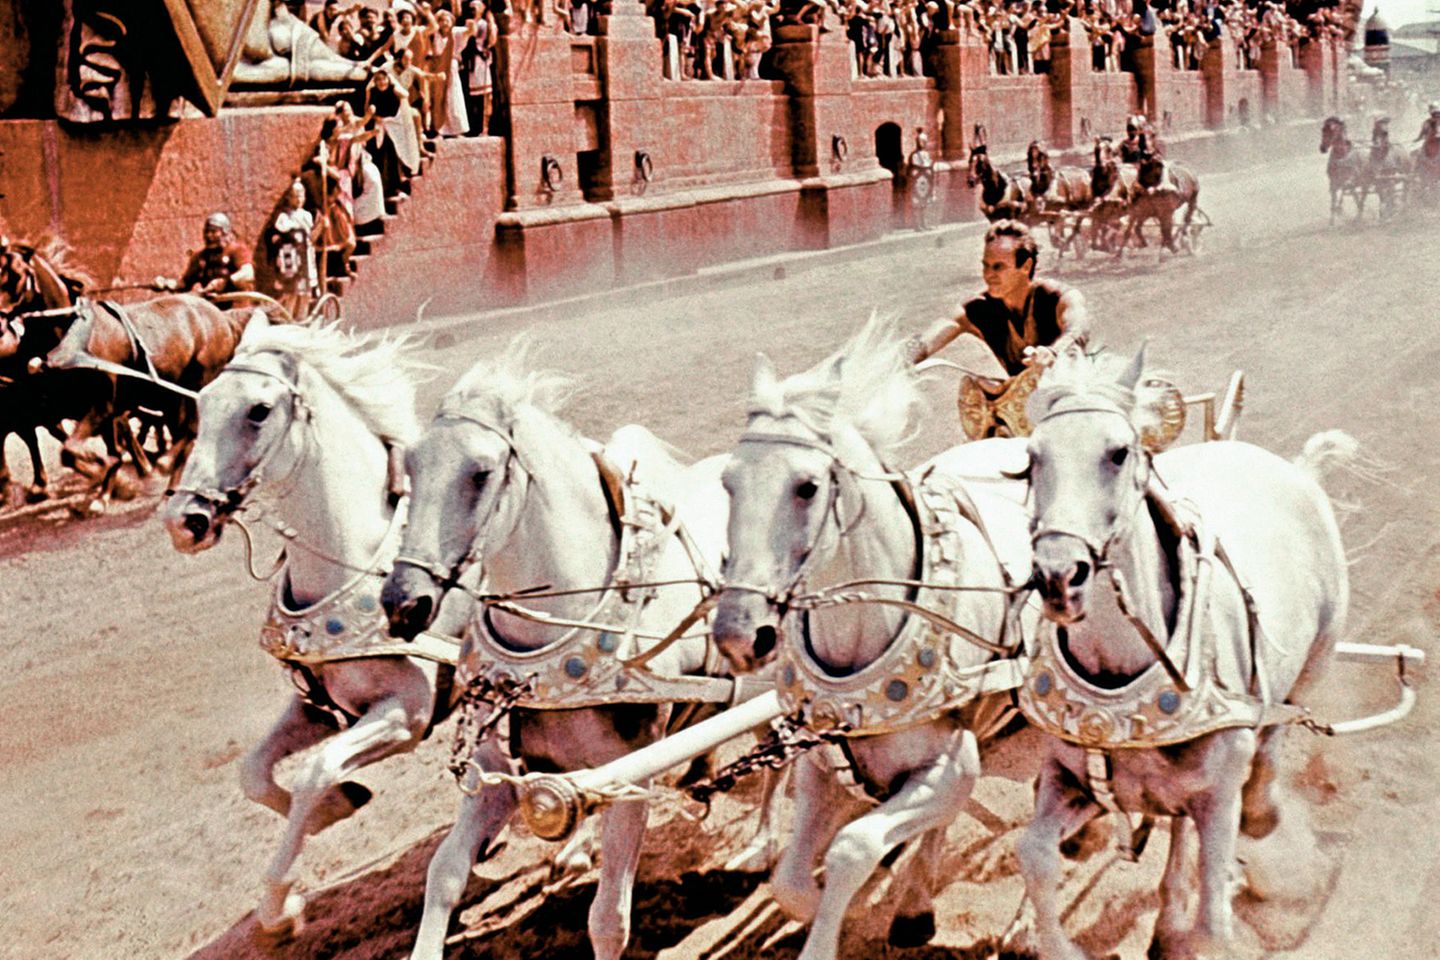 Legendäre Filmszene: Der Epos "Ben Hur" mit Charlton Heston von 1959 zeigt ein spektakuläres Wagenrennen im Circus Maximus. Der Klassiker gehört zu den aufwendigsten Filmen seiner Zeit  